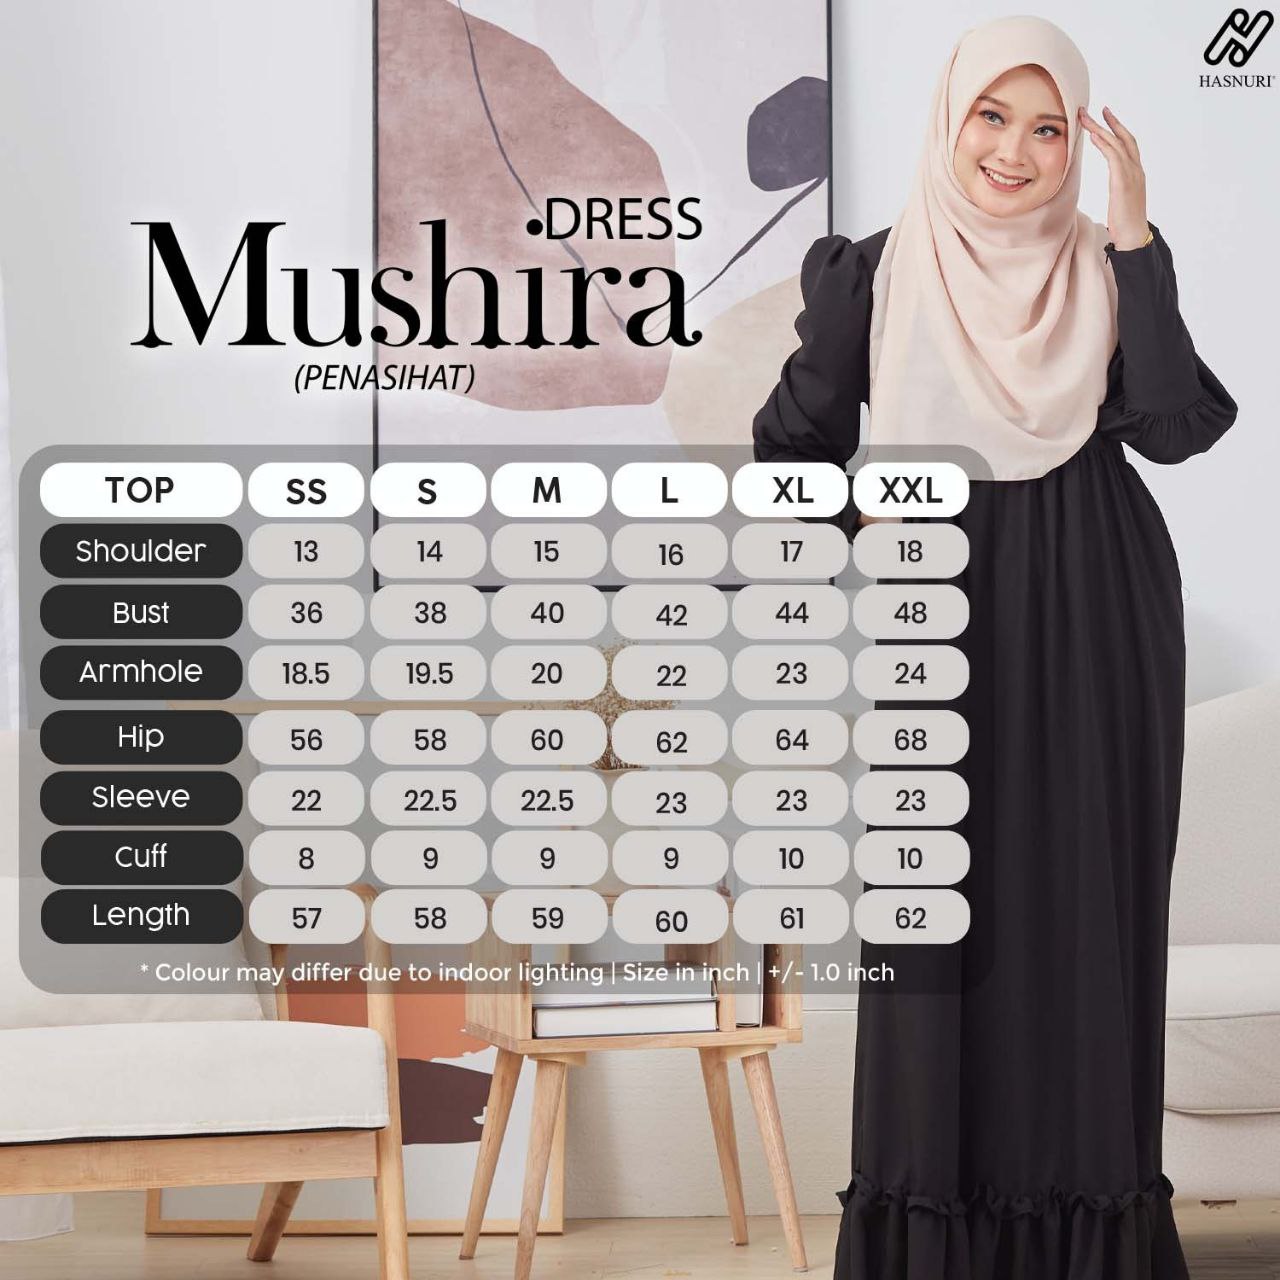 Dress Mushira - Dusty Purple